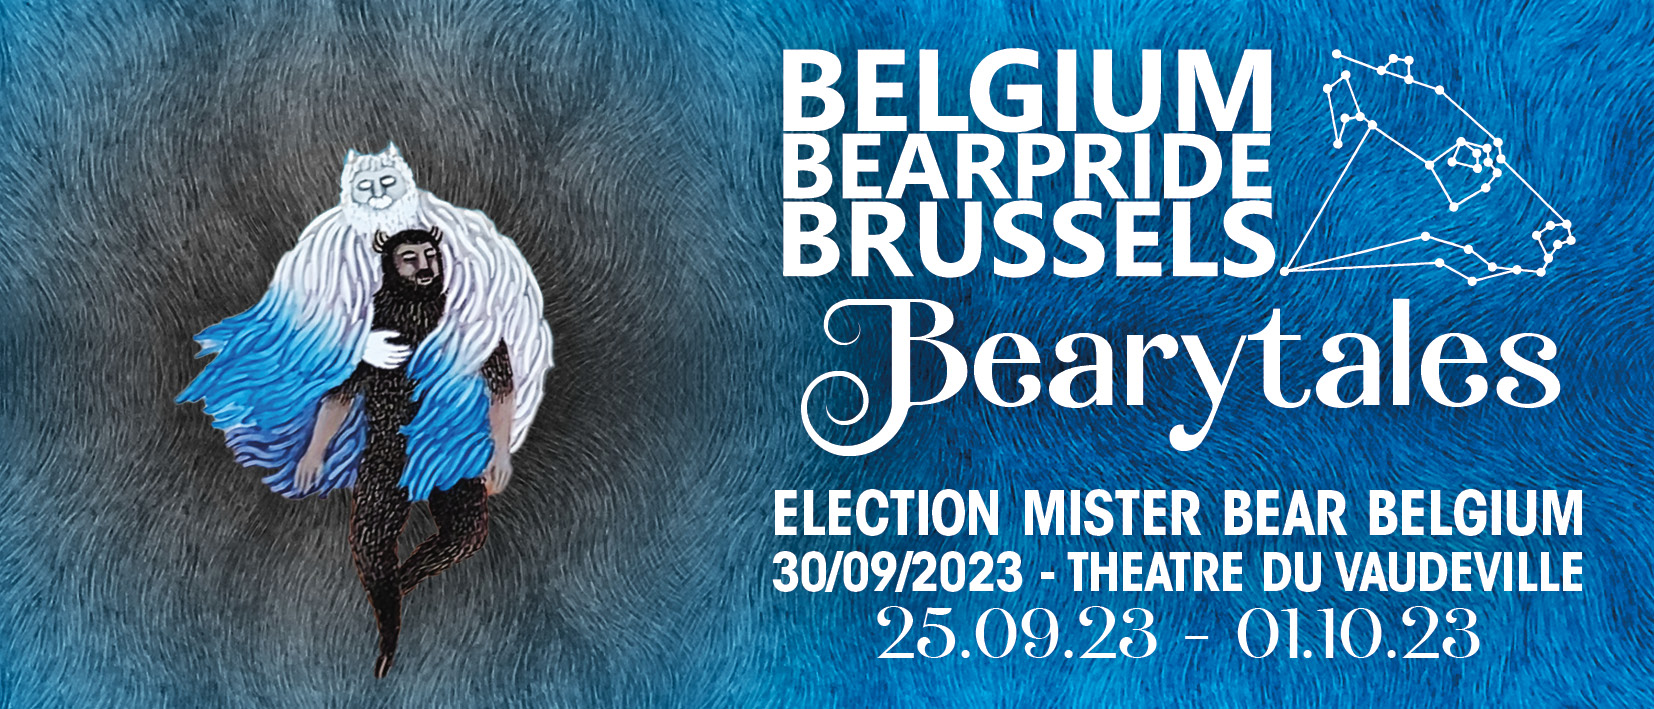 Event banner for Belgium BearPride Brussels